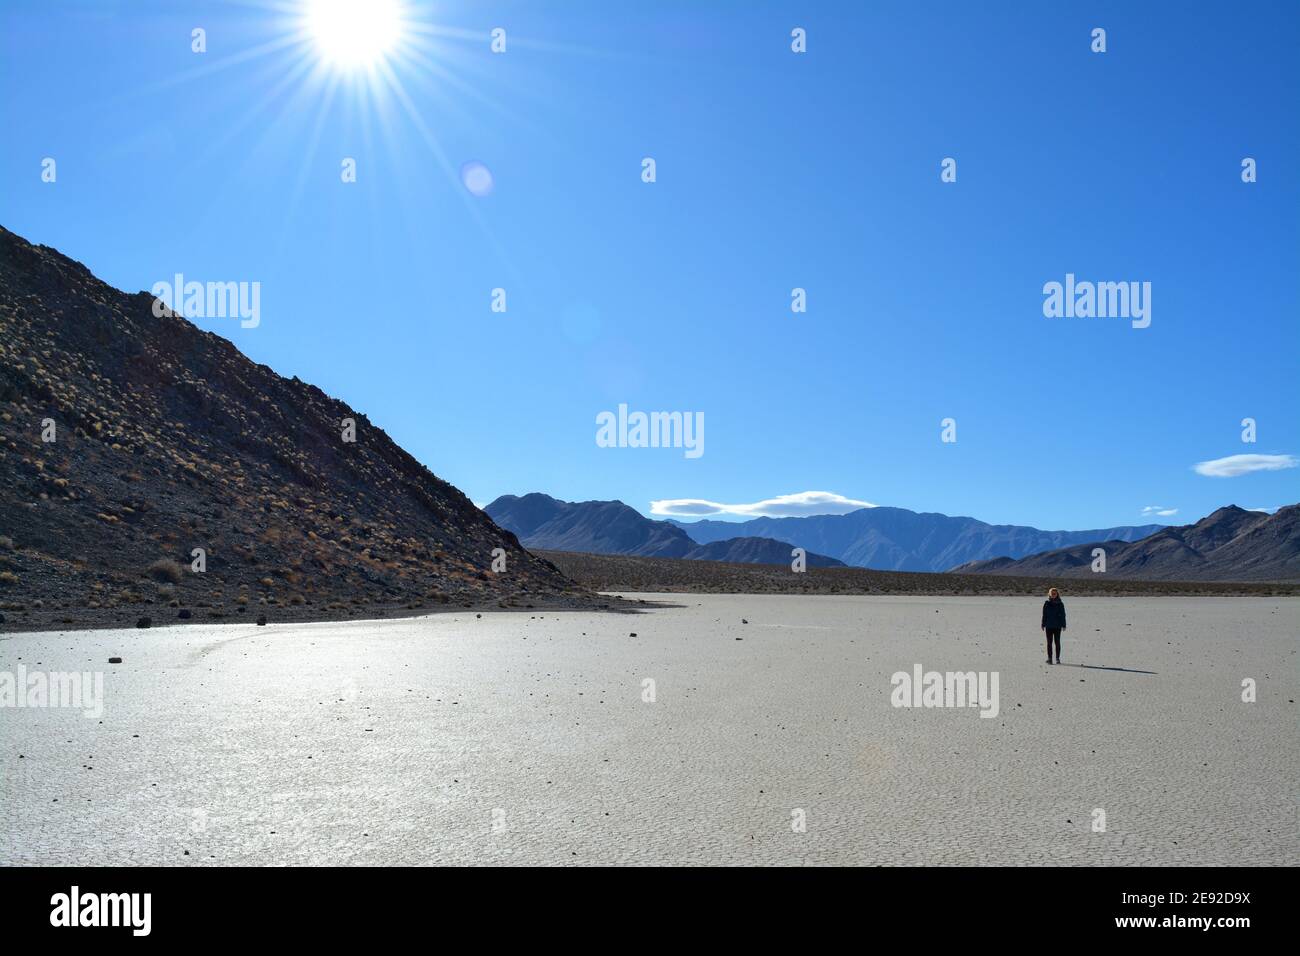 Femme marchant sur l'hippodrome Playa lors d'une journée froide de décembre dans le parc national de la Vallée de la mort, magnifique paysage avec les rochers en mouvement laissant des pistes Banque D'Images